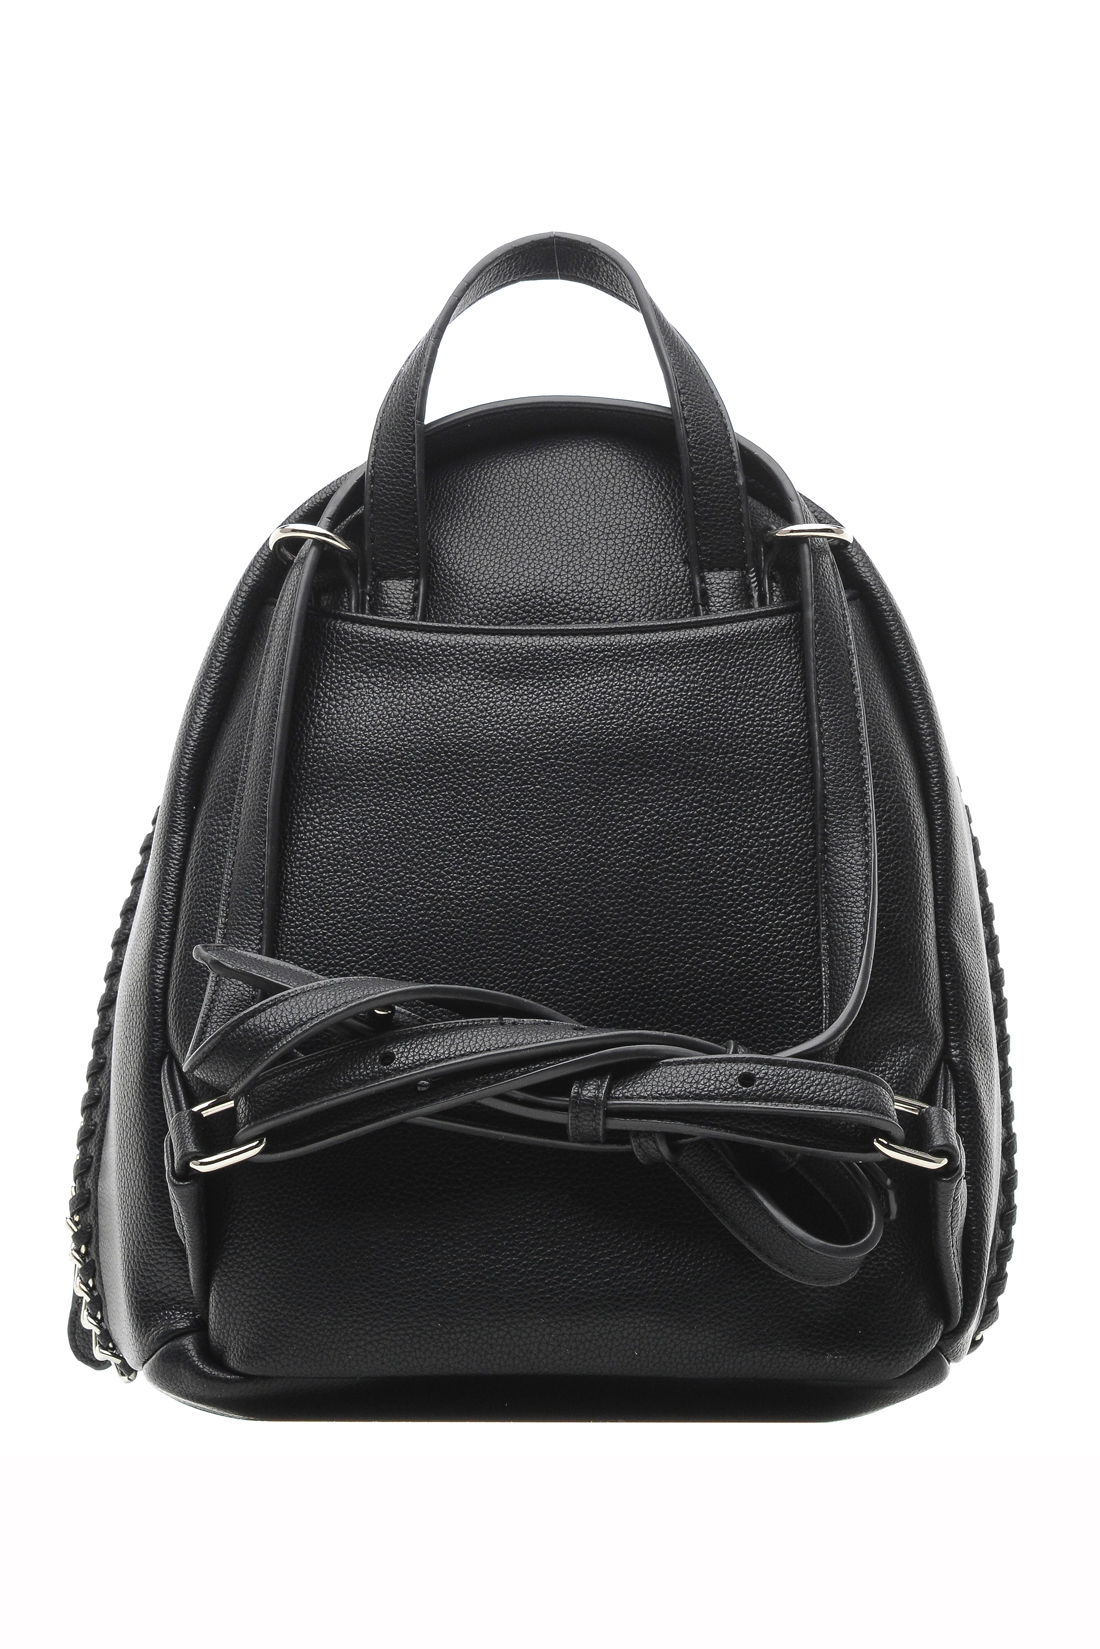 Рюкзак с металлической отделкой (арт. baon B379004), размер Без/раз, цвет черный Рюкзак с металлической отделкой (арт. baon B379004) - фото 2